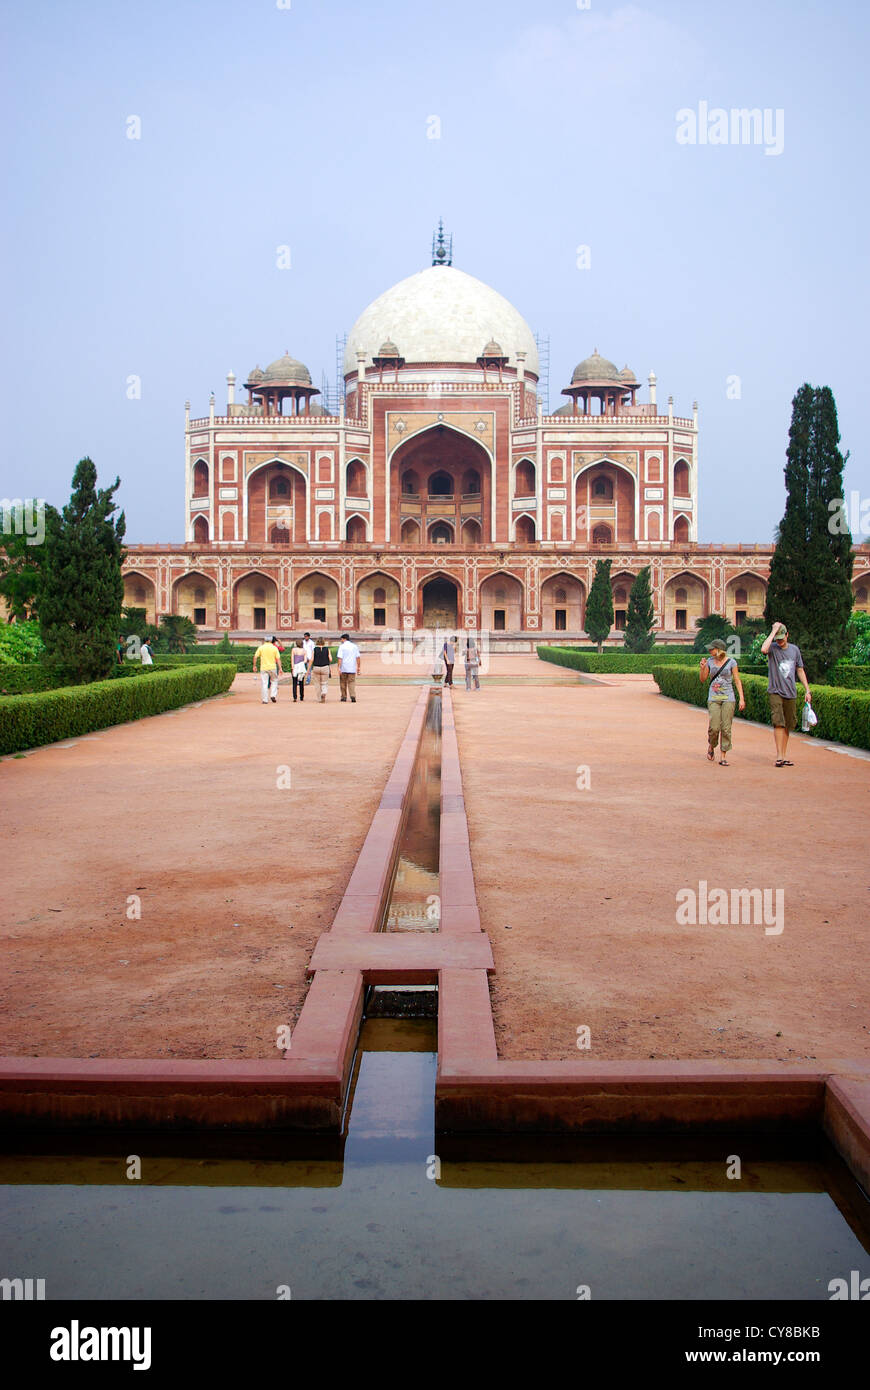 Humayun's Tomb, Nizamuddin East, Delhi, India Stock Photo